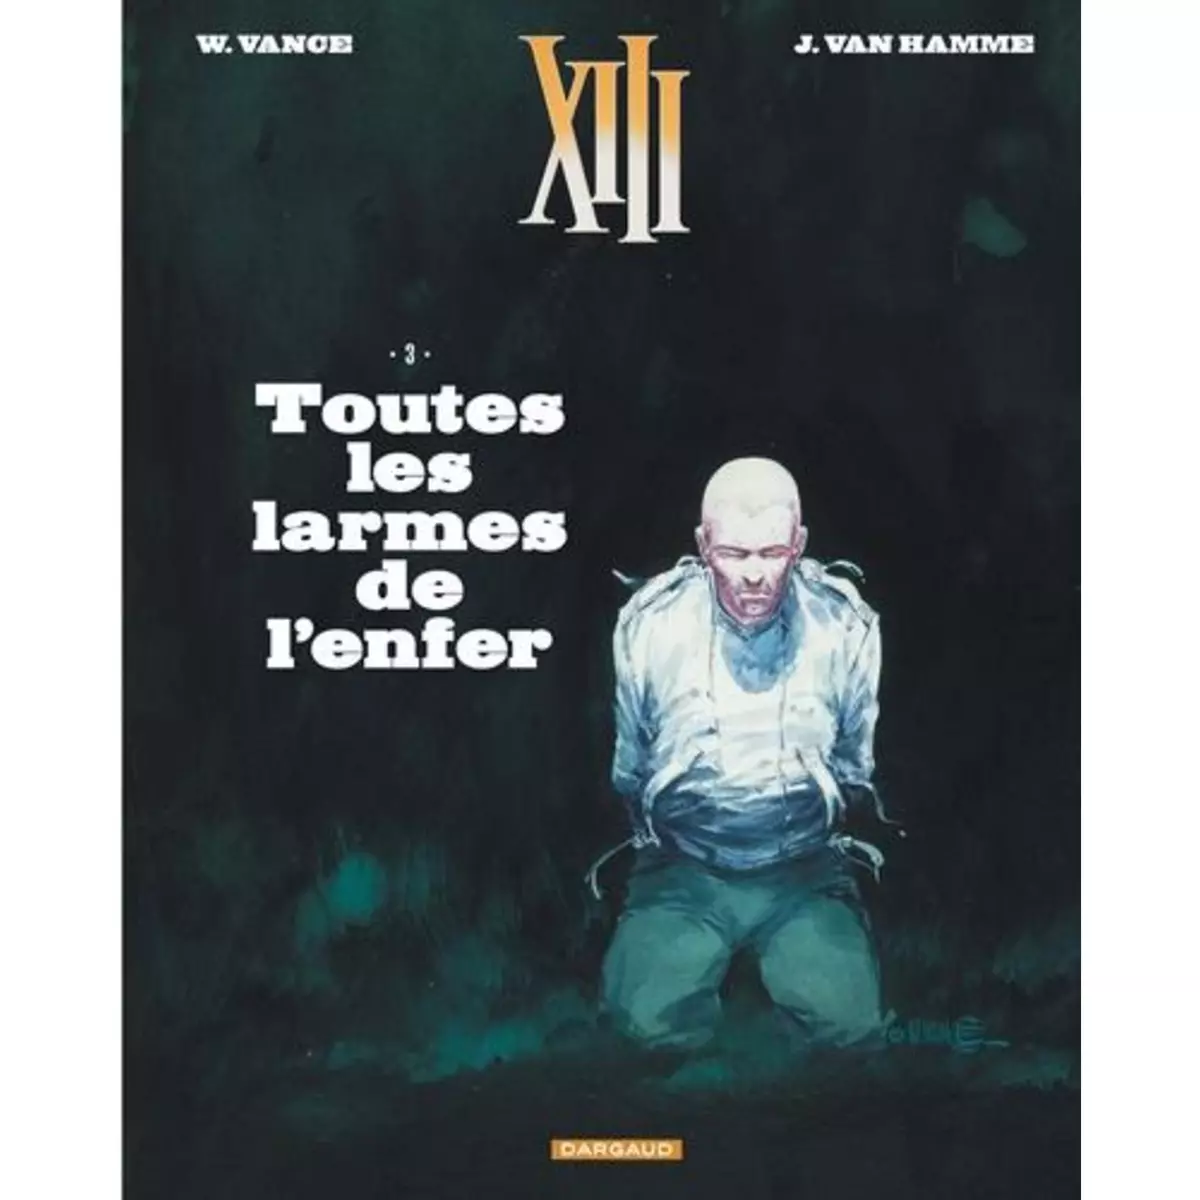  XIII TOME 3 : TOUTES LES LARMES DE L'ENFER, Van Hamme Jean